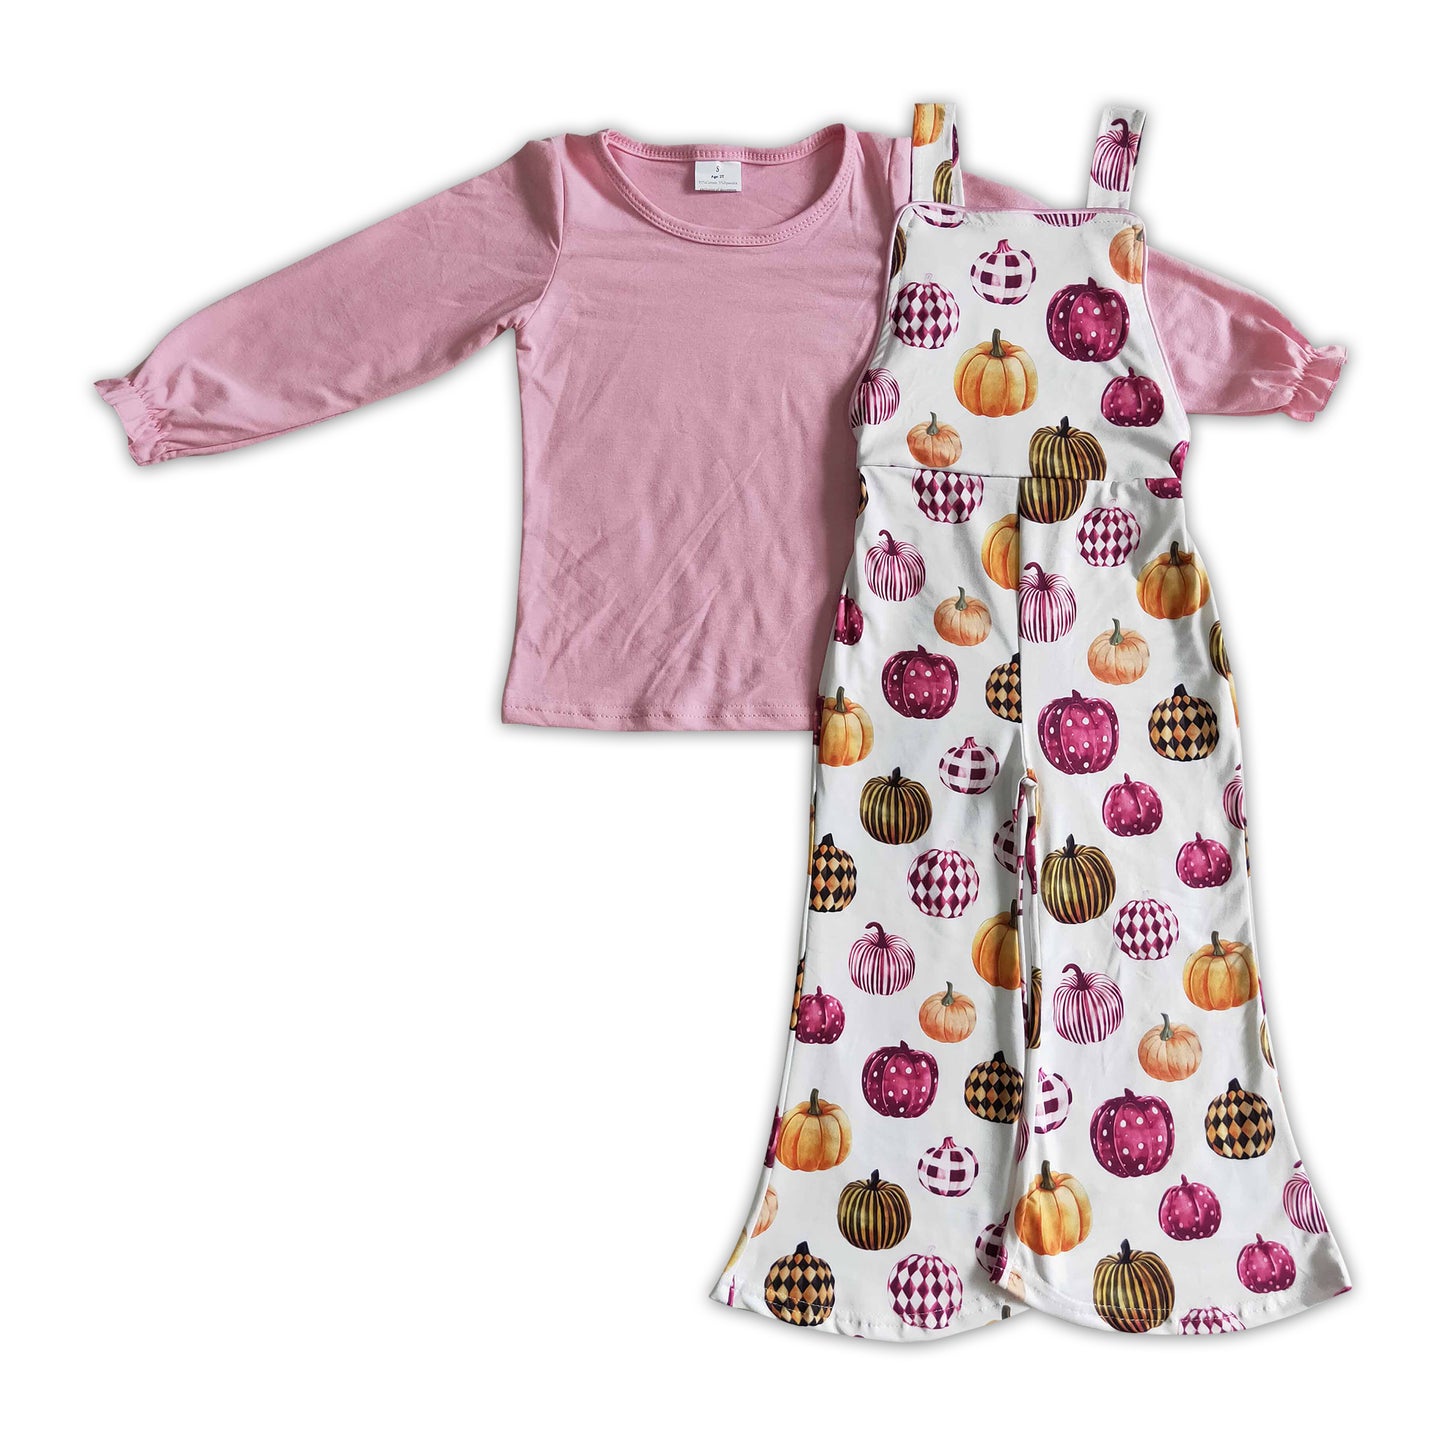 Pink cotton shirt pumpkin overalls girls Halloween clothing